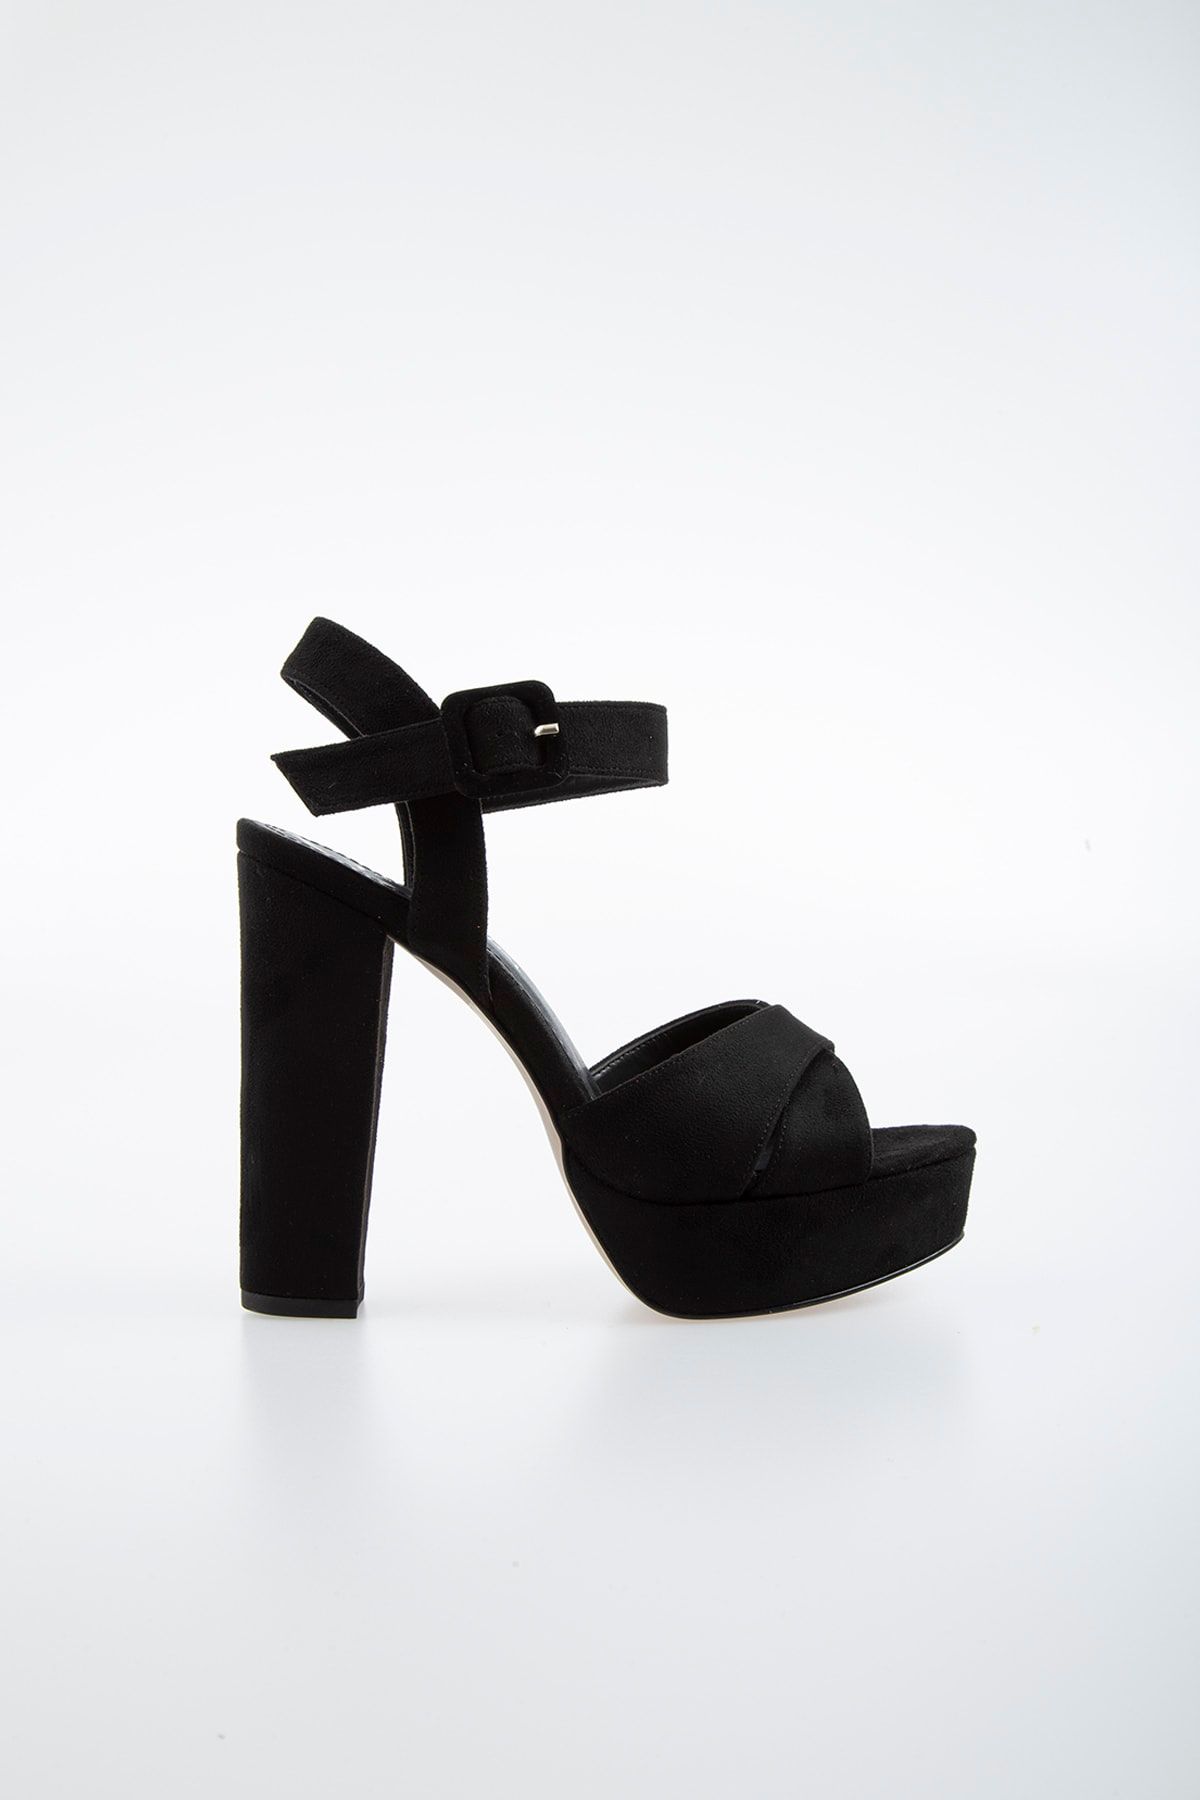 Pierre Cardin Pc-50165 Suet Siyah Kadın Ayakkabı